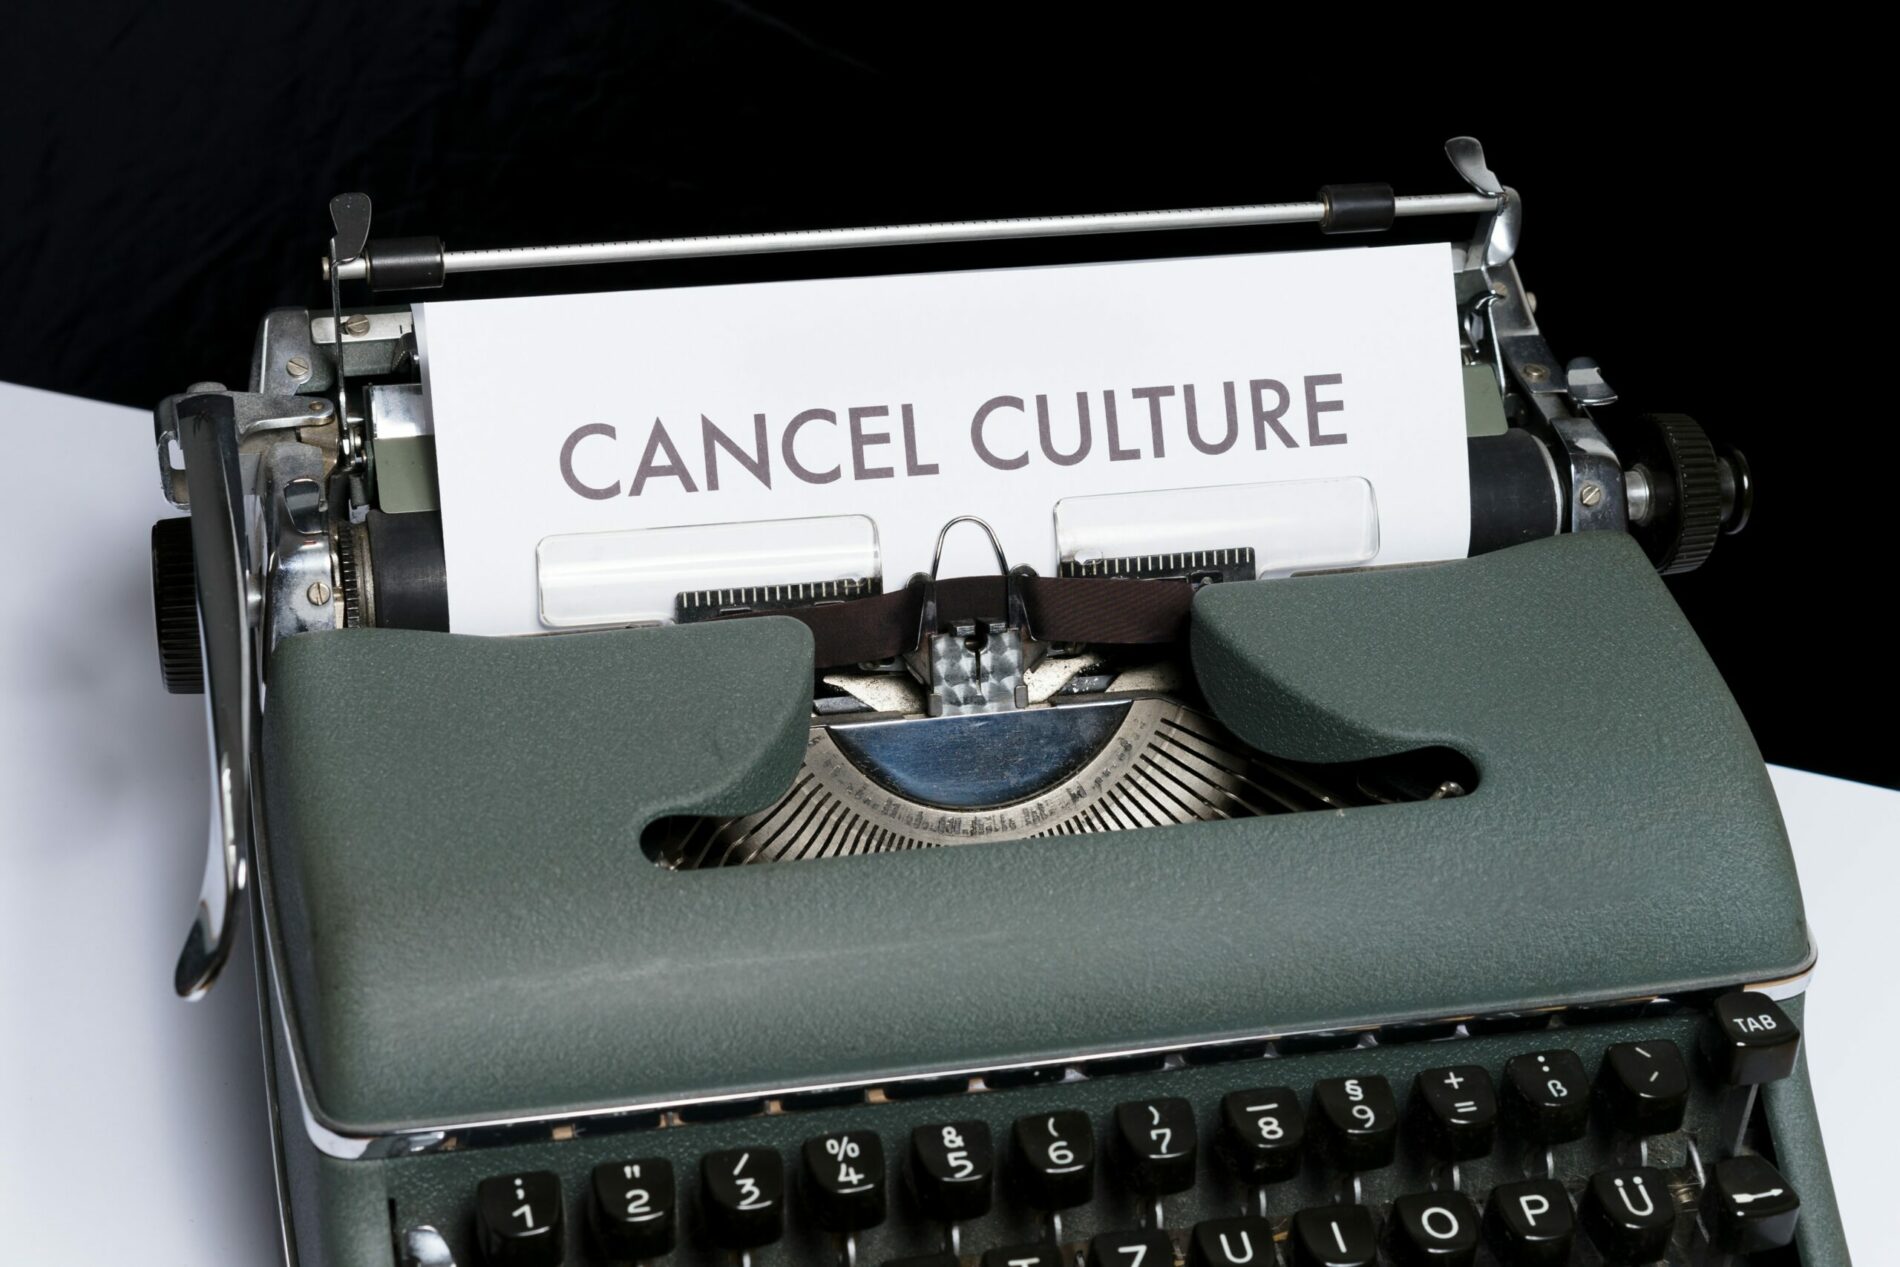 Cancel culture e guerra: qual è la chiave per salvaguardare la libertà di espressione?